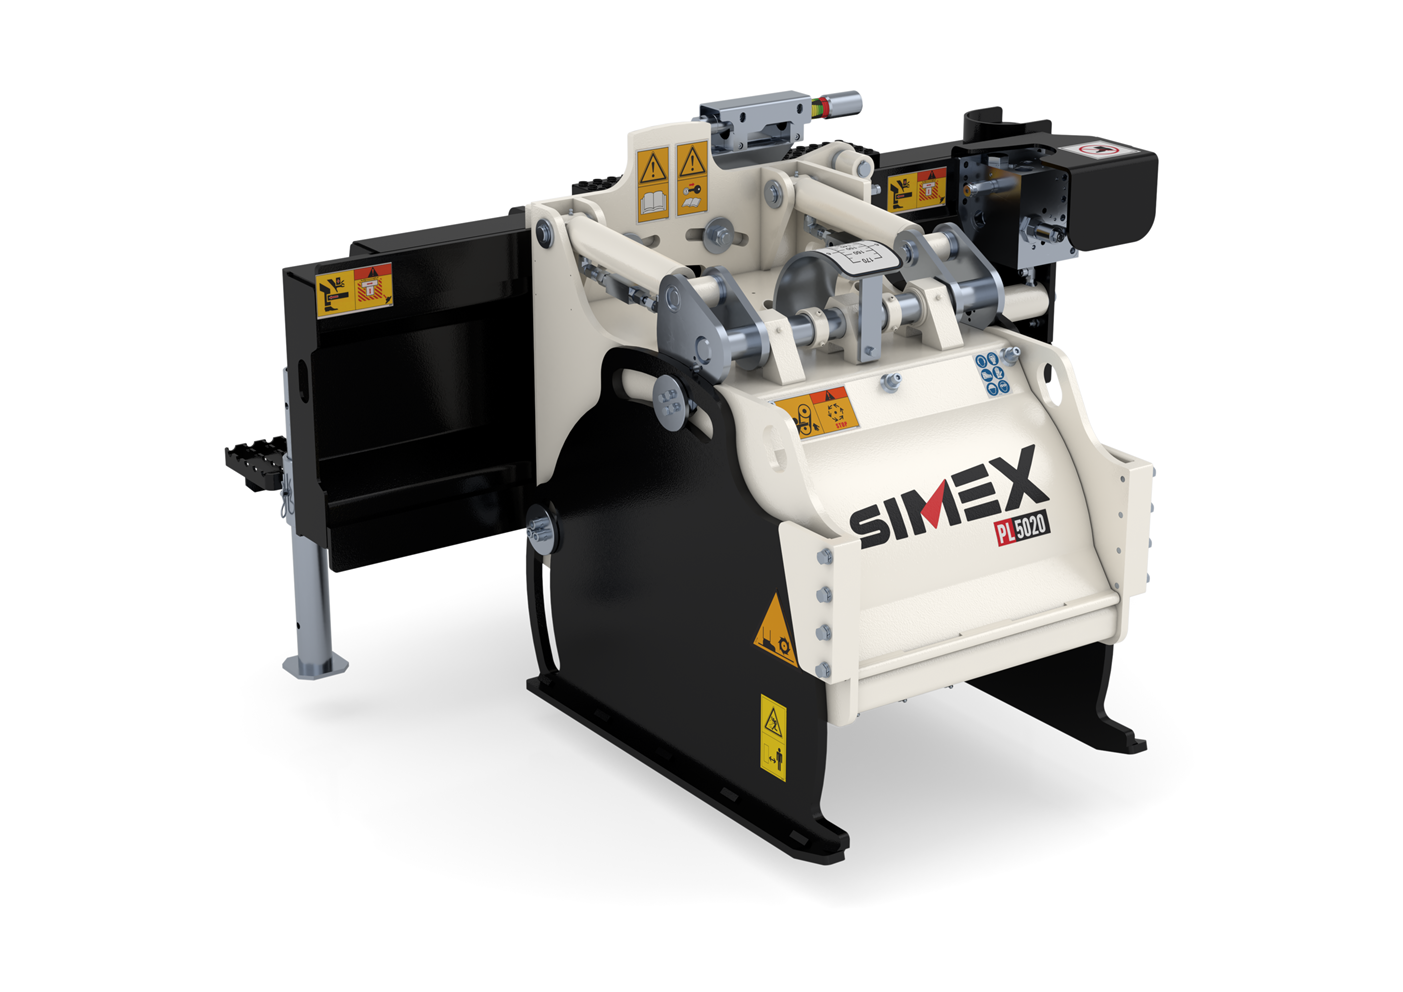 Simex PL 5020 Straßenfräse, mit einer Arbeitsbreite von 500mm ideale Fräse für asphaltierte Gehwege oder auch Industrieböden.